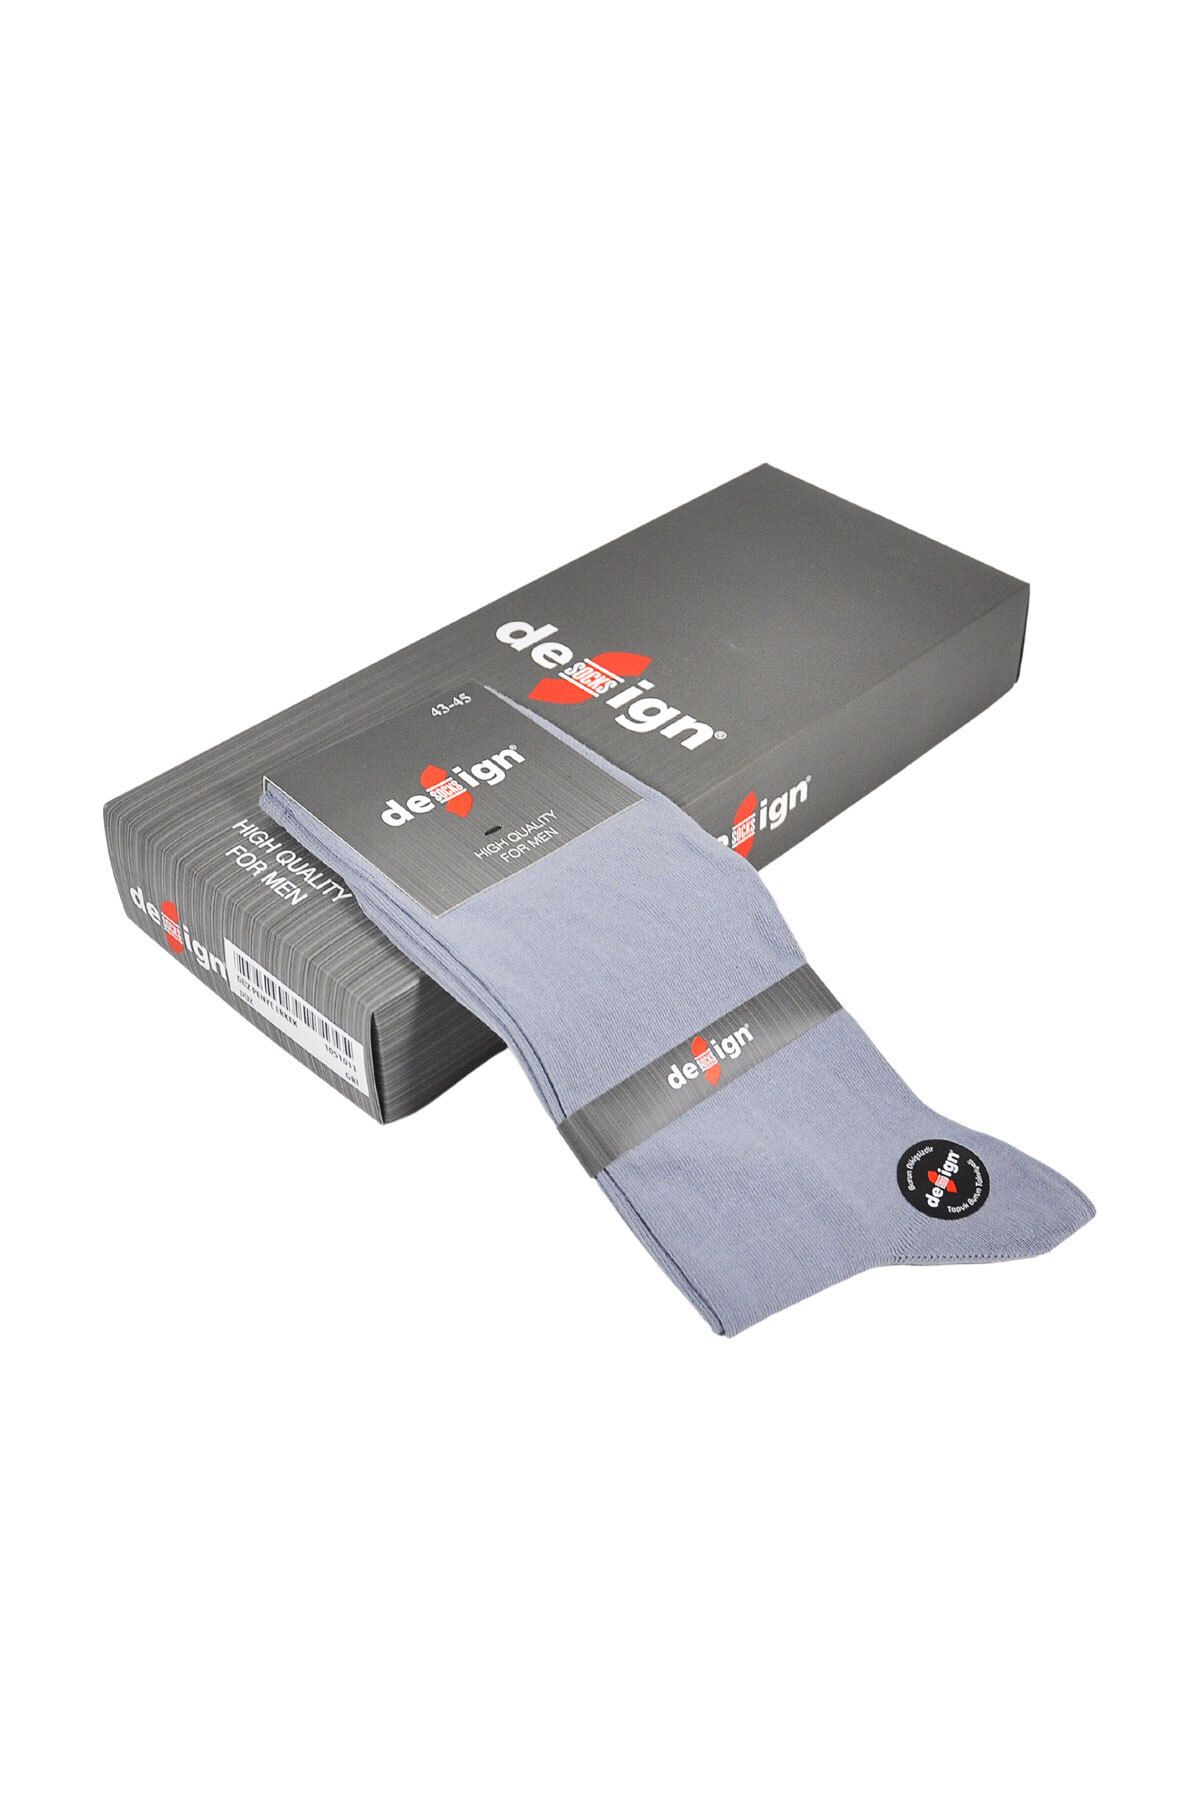 Design Socks Erkek Gri Düz Penye Çorap (6 ÇİFT) Özel Kutuda - Desen Çorap